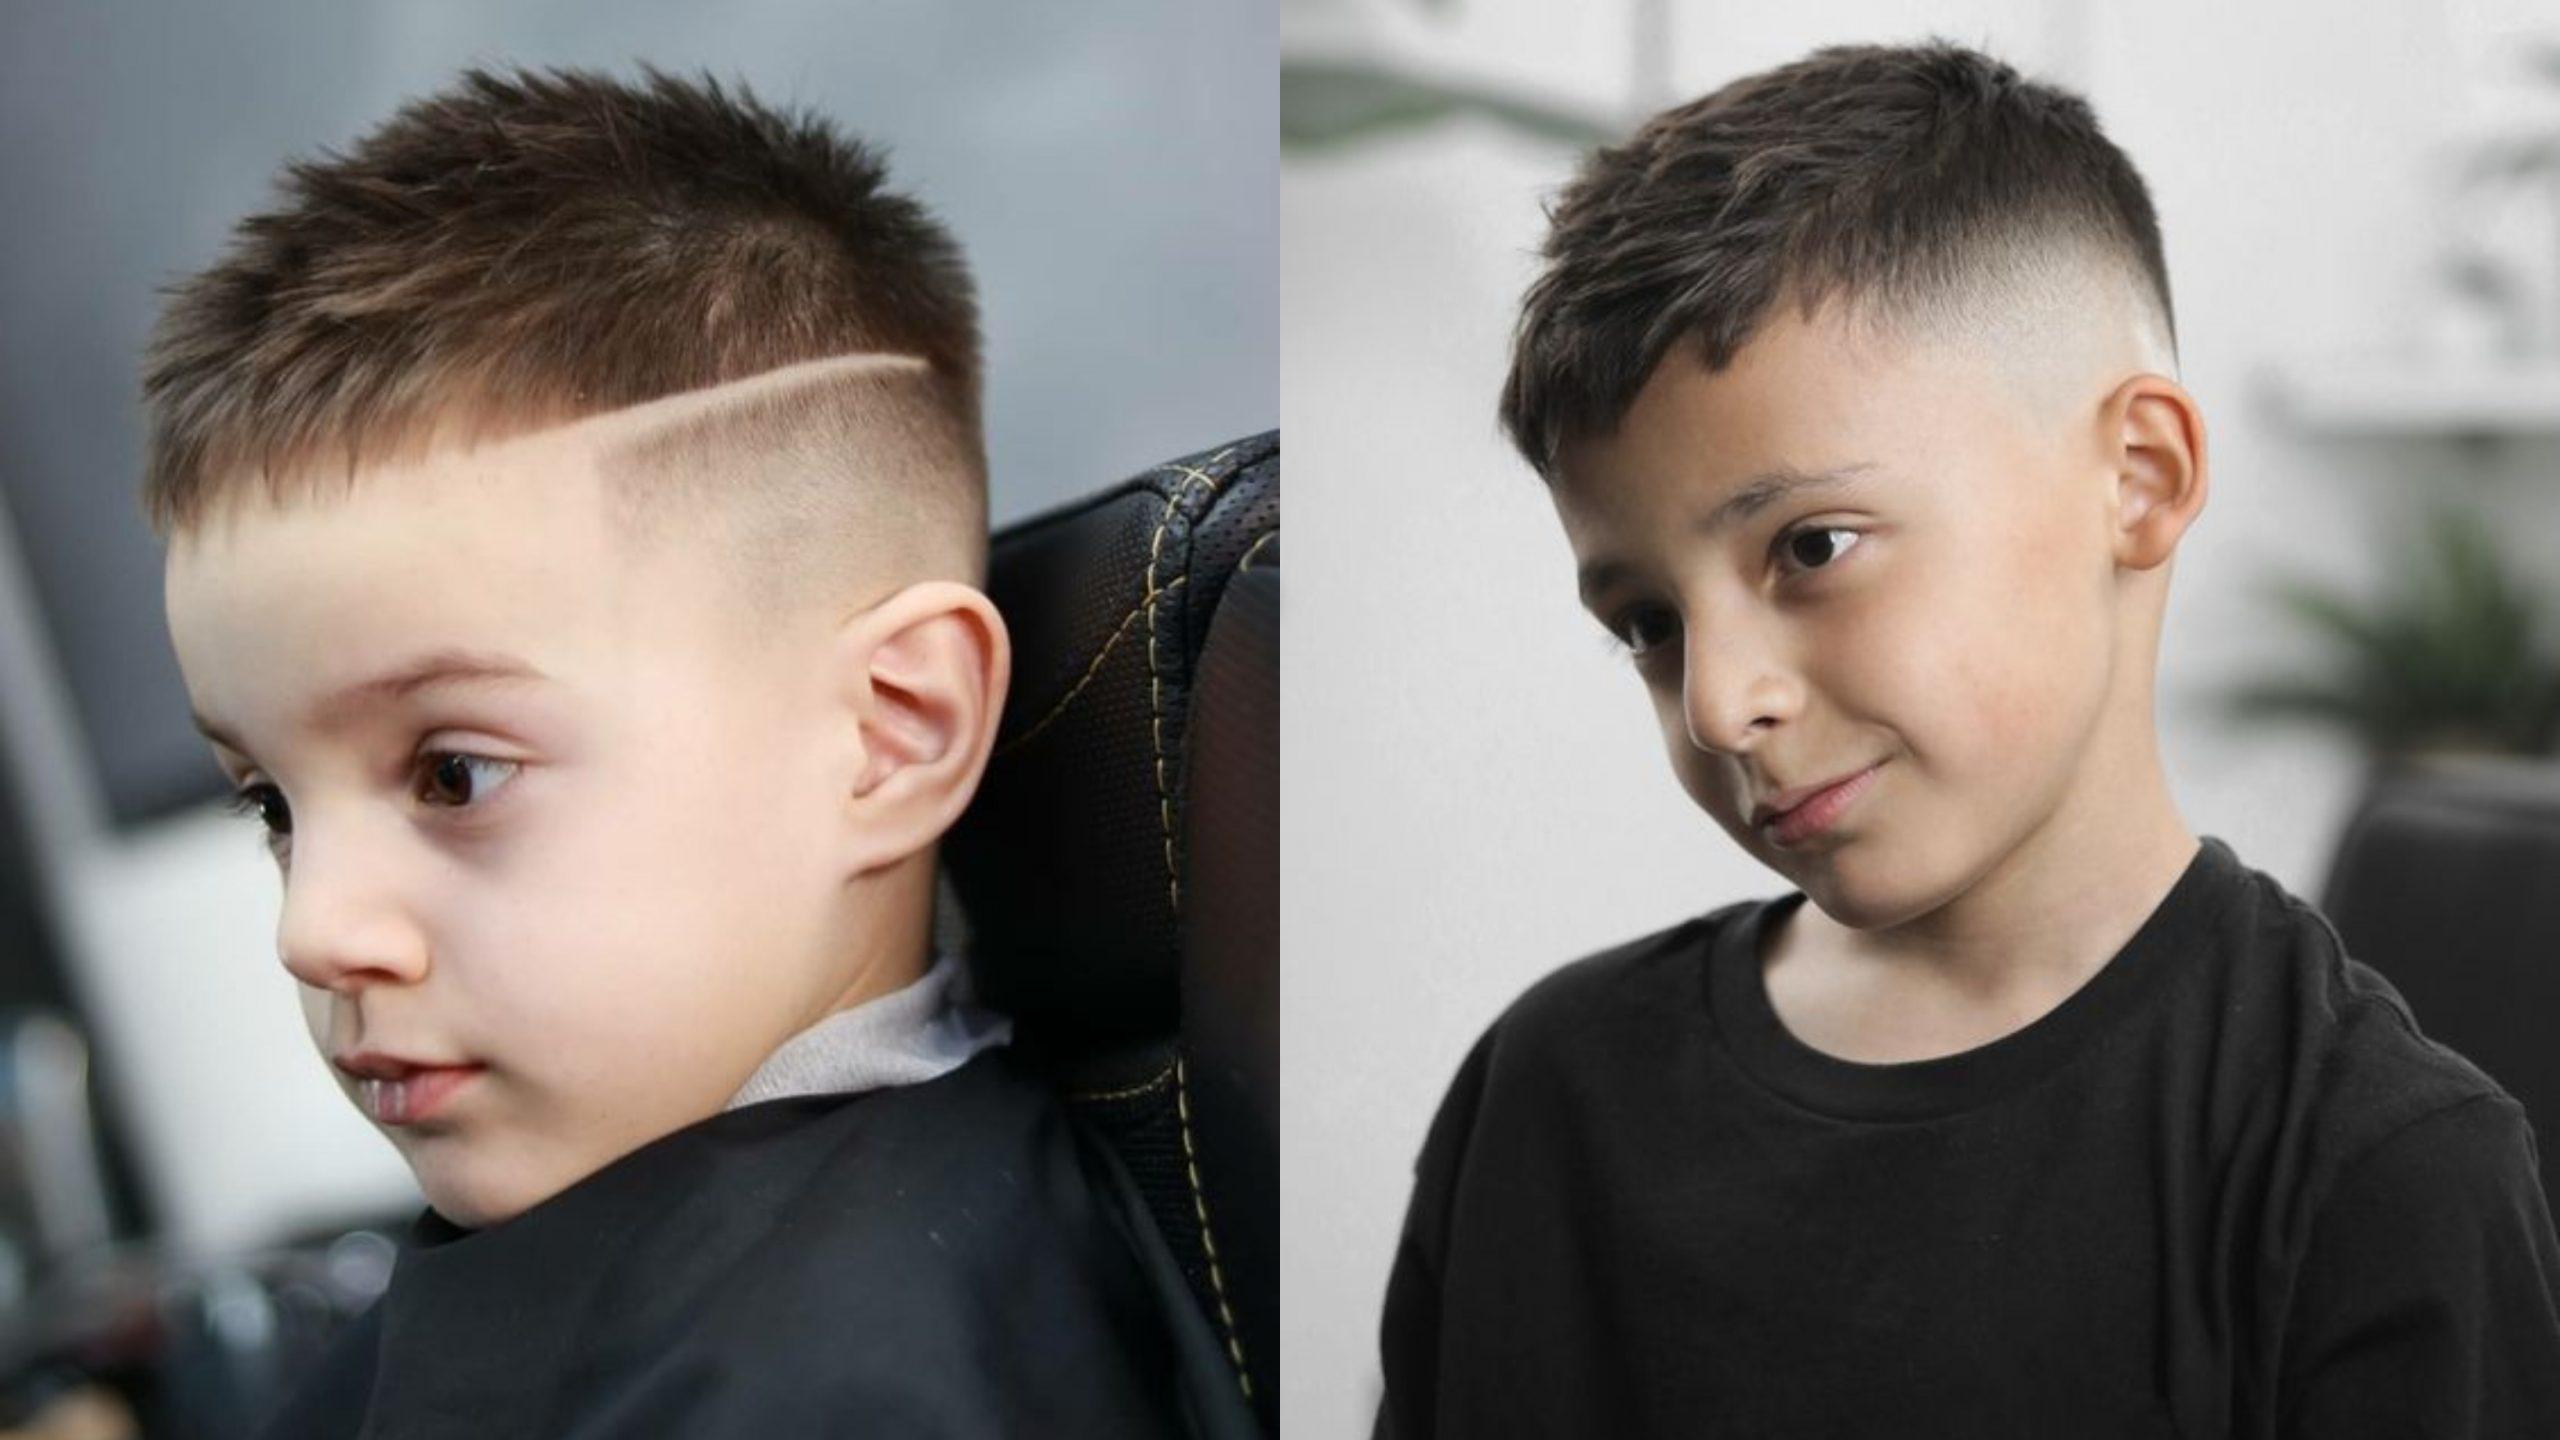 Kiểu tóc đẹp cho bé trai 6 tuổi - 10 kiểu khiến con bảnh bao nhất